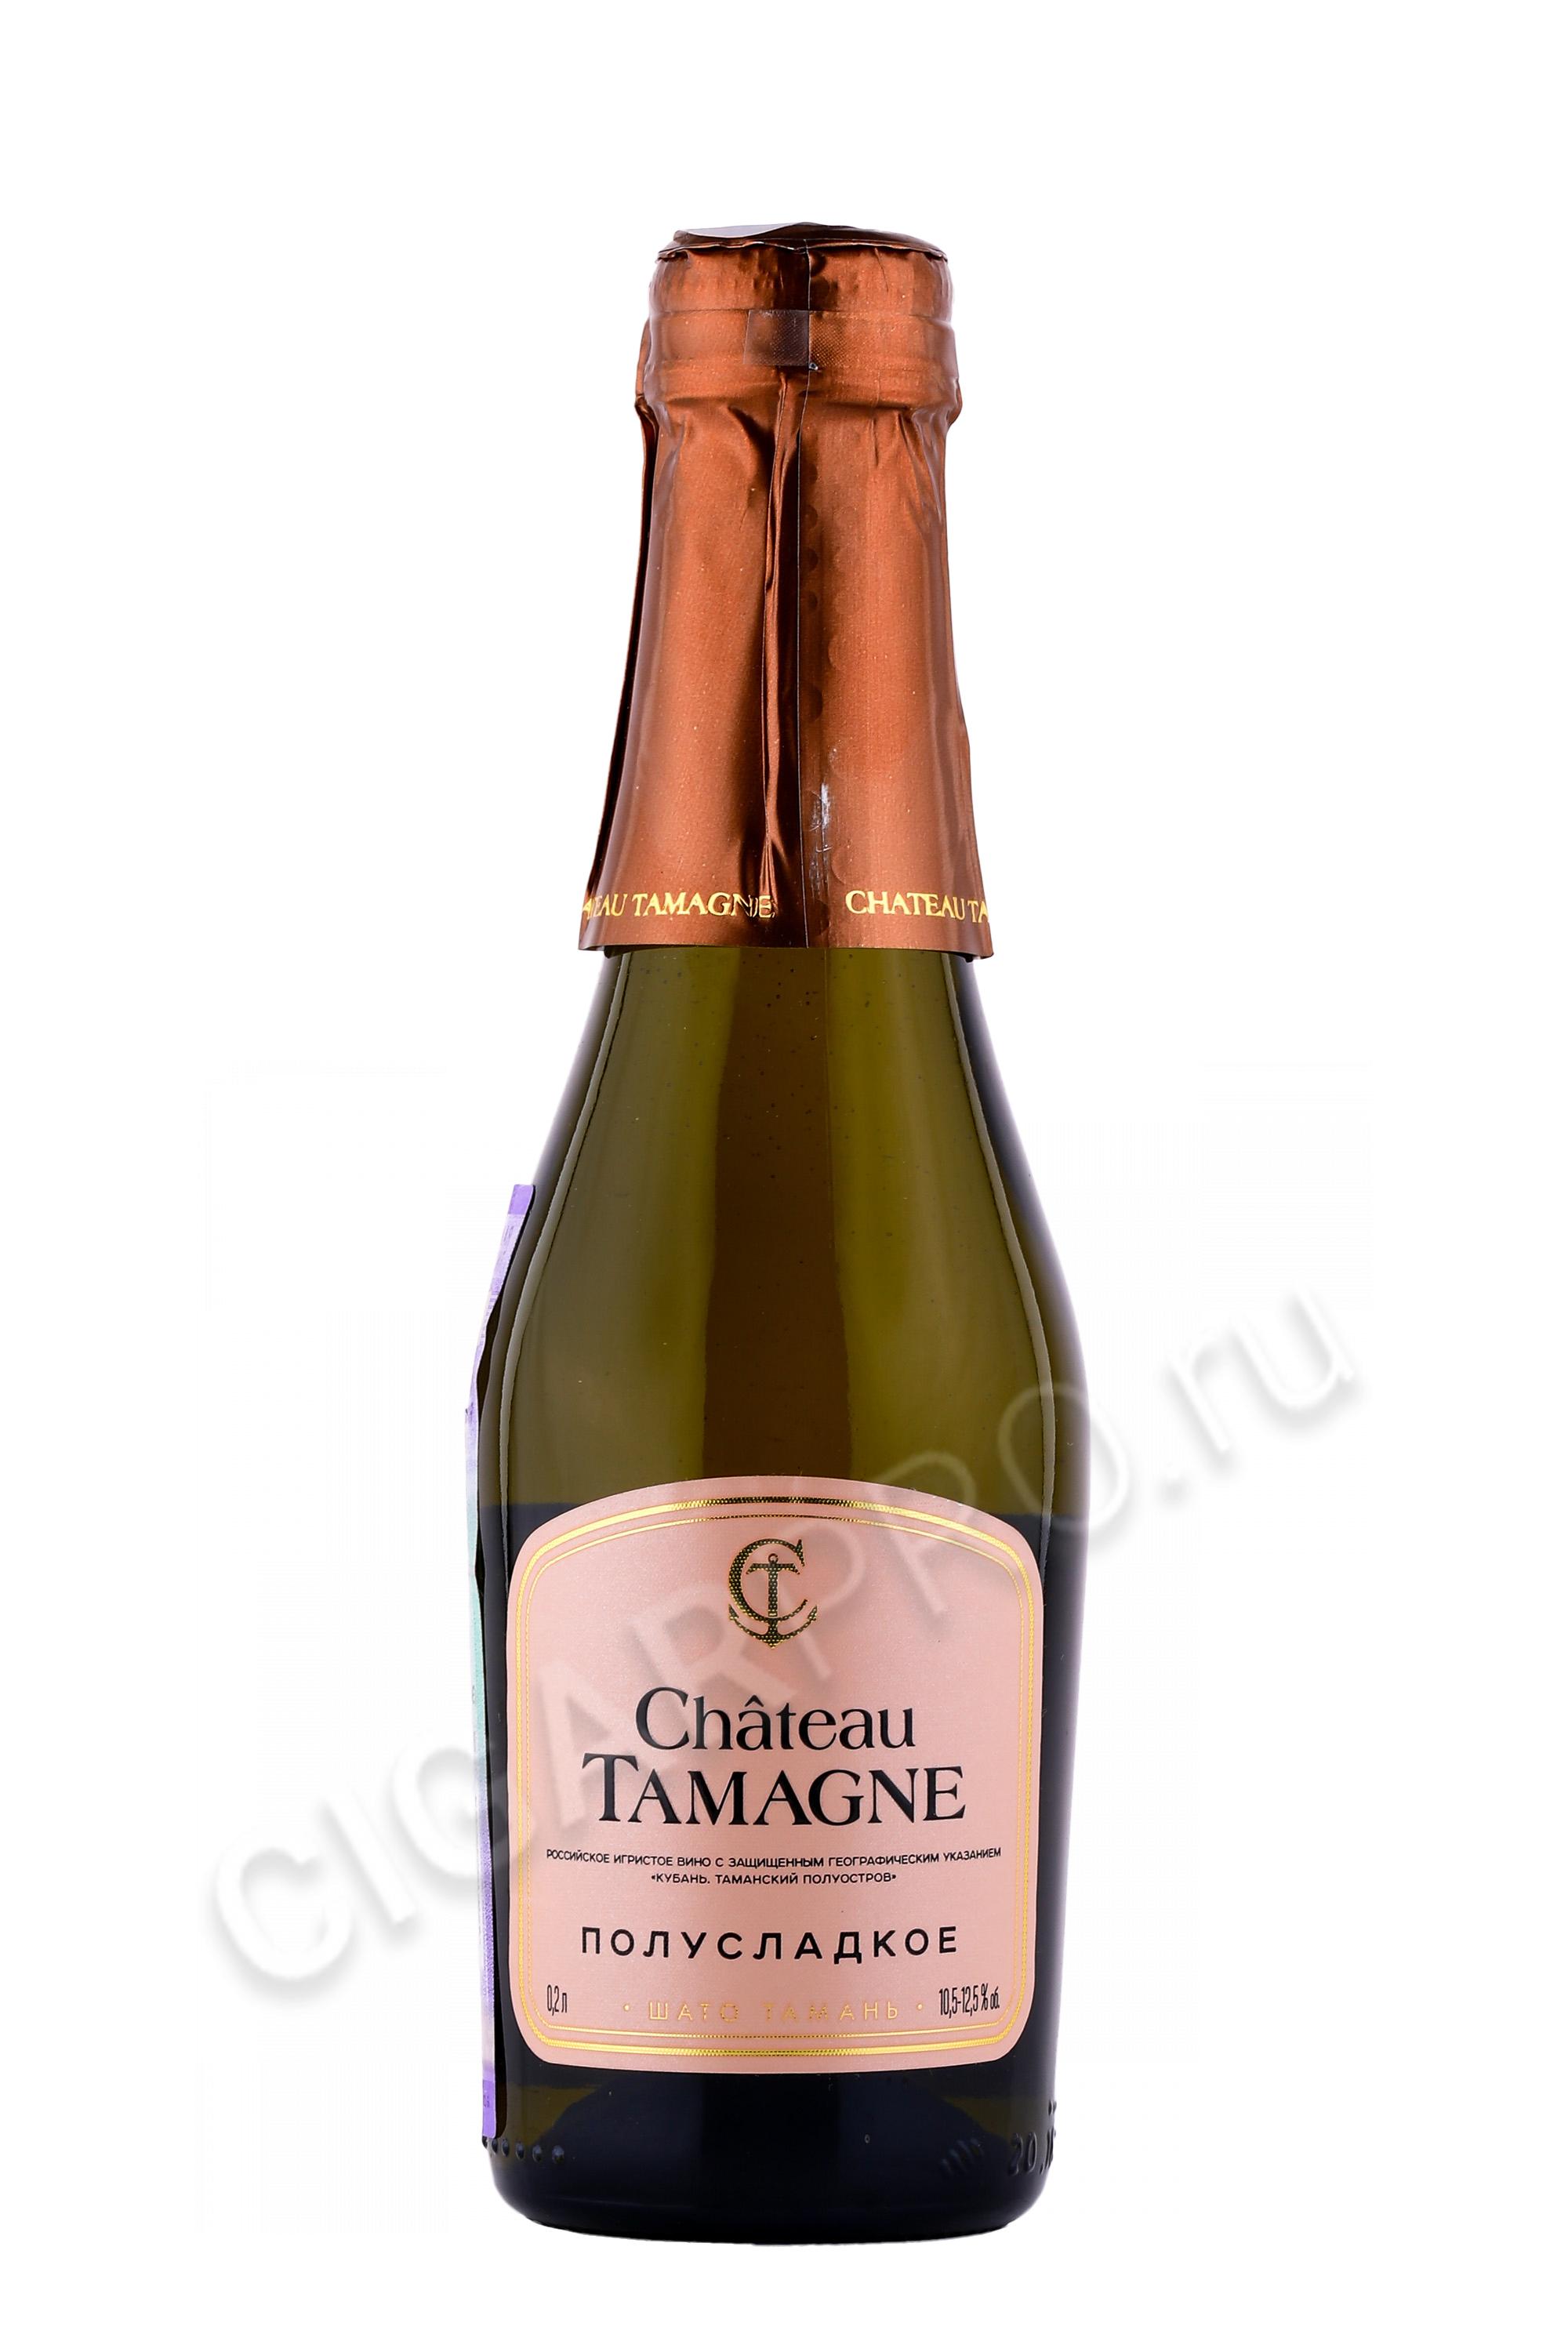 Шампанское tamagne полусладкое. Шампанское Chateau Tamagne полусладкое 0.2. Вино игристое Шато Тамань белое полусладкое 0.2. Шато Тамань шампанское полусладкое. Шато Тамань белое полусладкое.